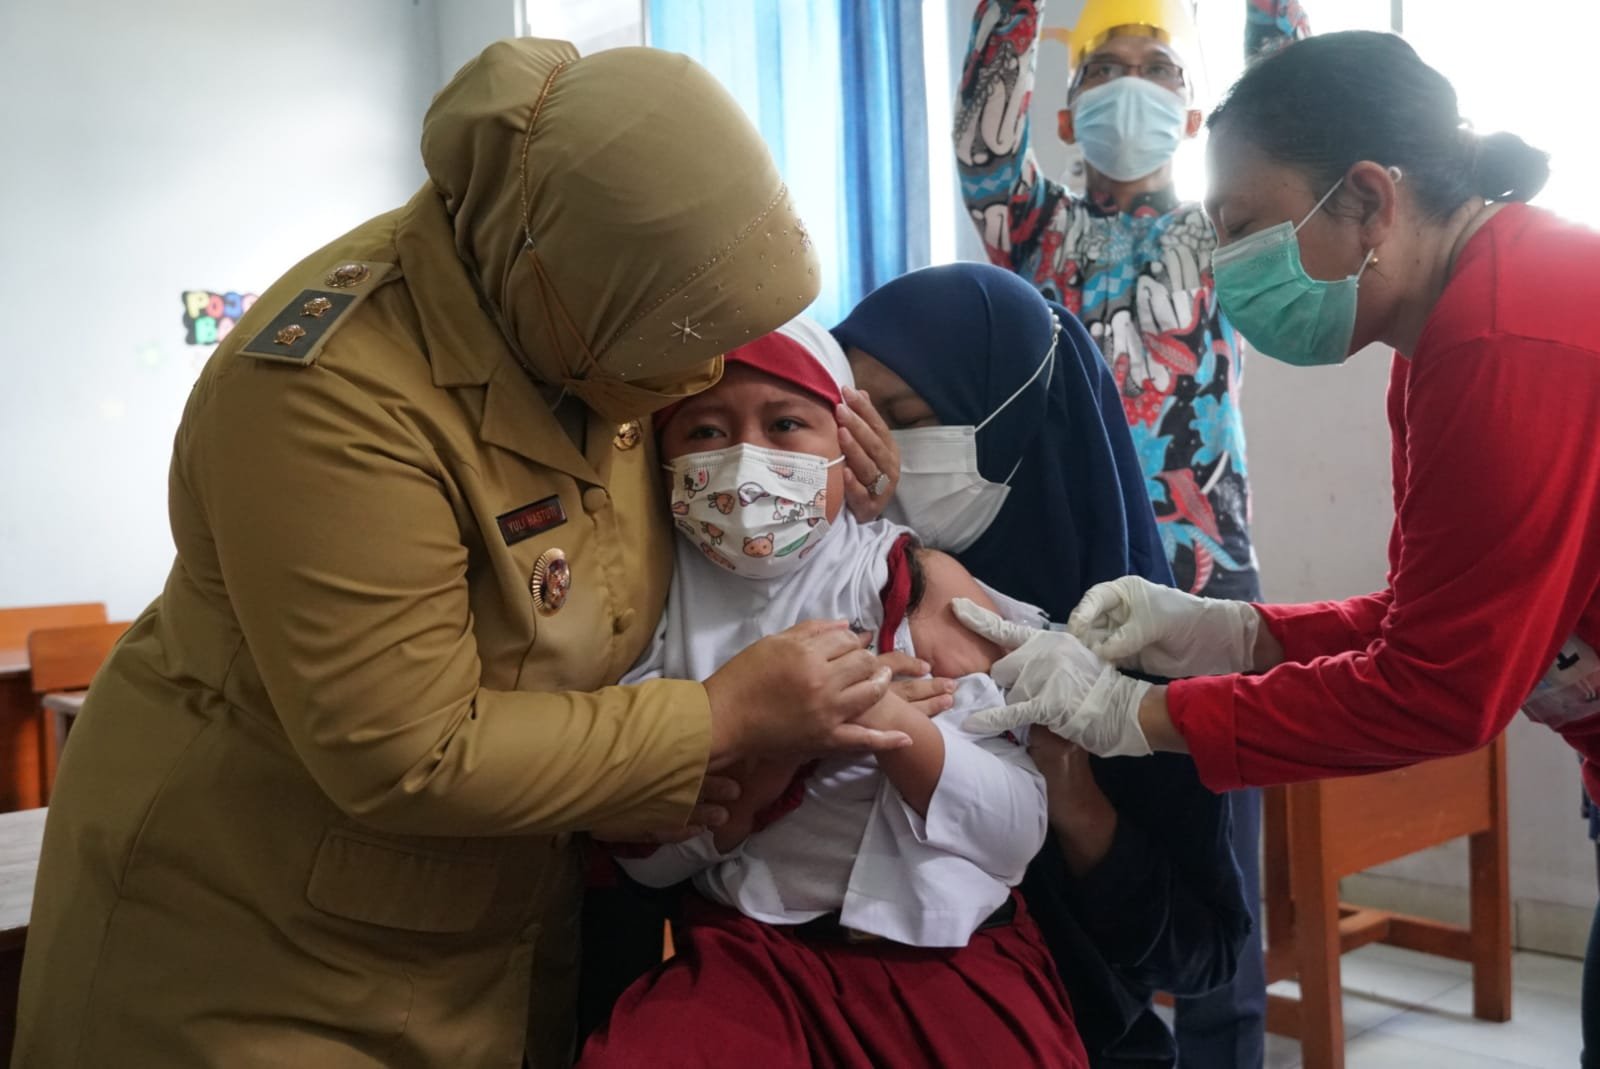 TINJAU. Wabup Yuli Hastuti meninjau pelaksanaan vaksinasi bagi anak yang dipusatkan di SDIT Ulul Albab Purworejo, (Foto: eko)